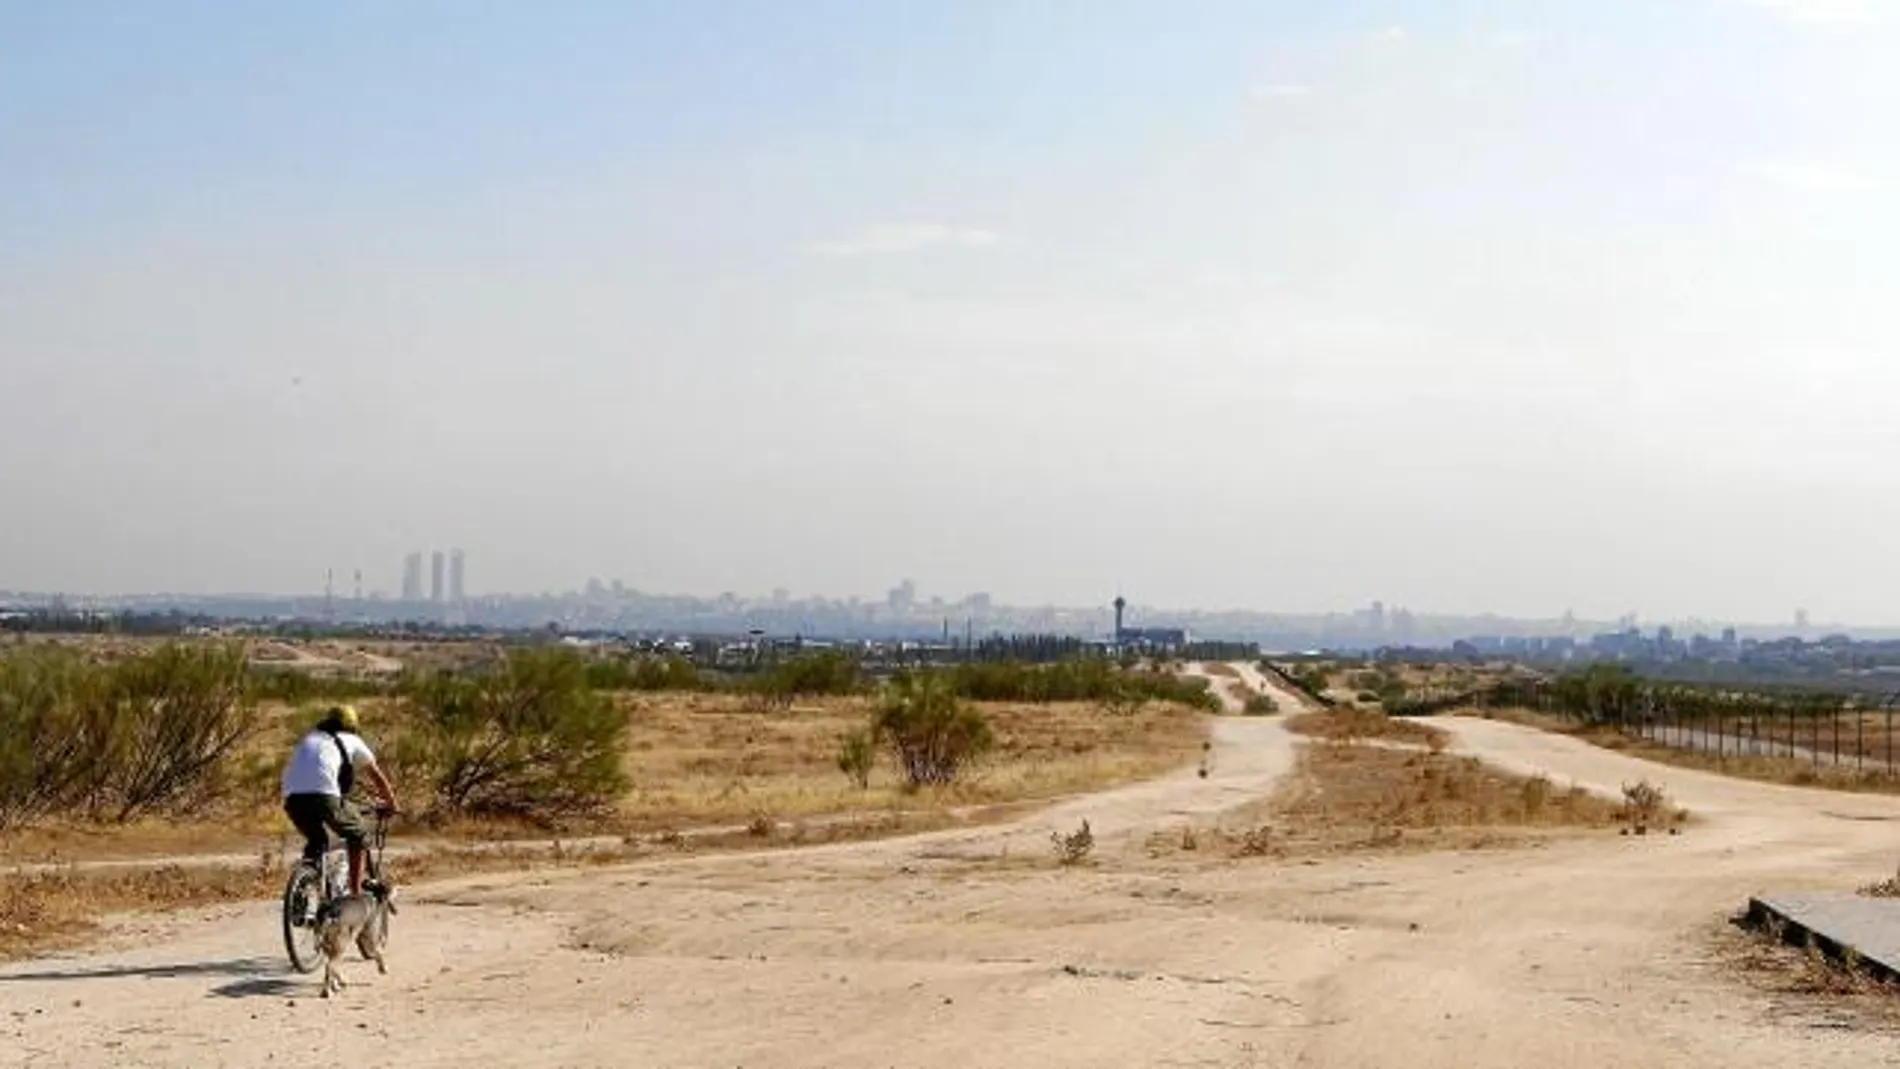 Las Vegas Sands valora, además de Alcorcón, otros dos terrenos en Paracuellos del Jarama/Torrejón y en Valdecarros